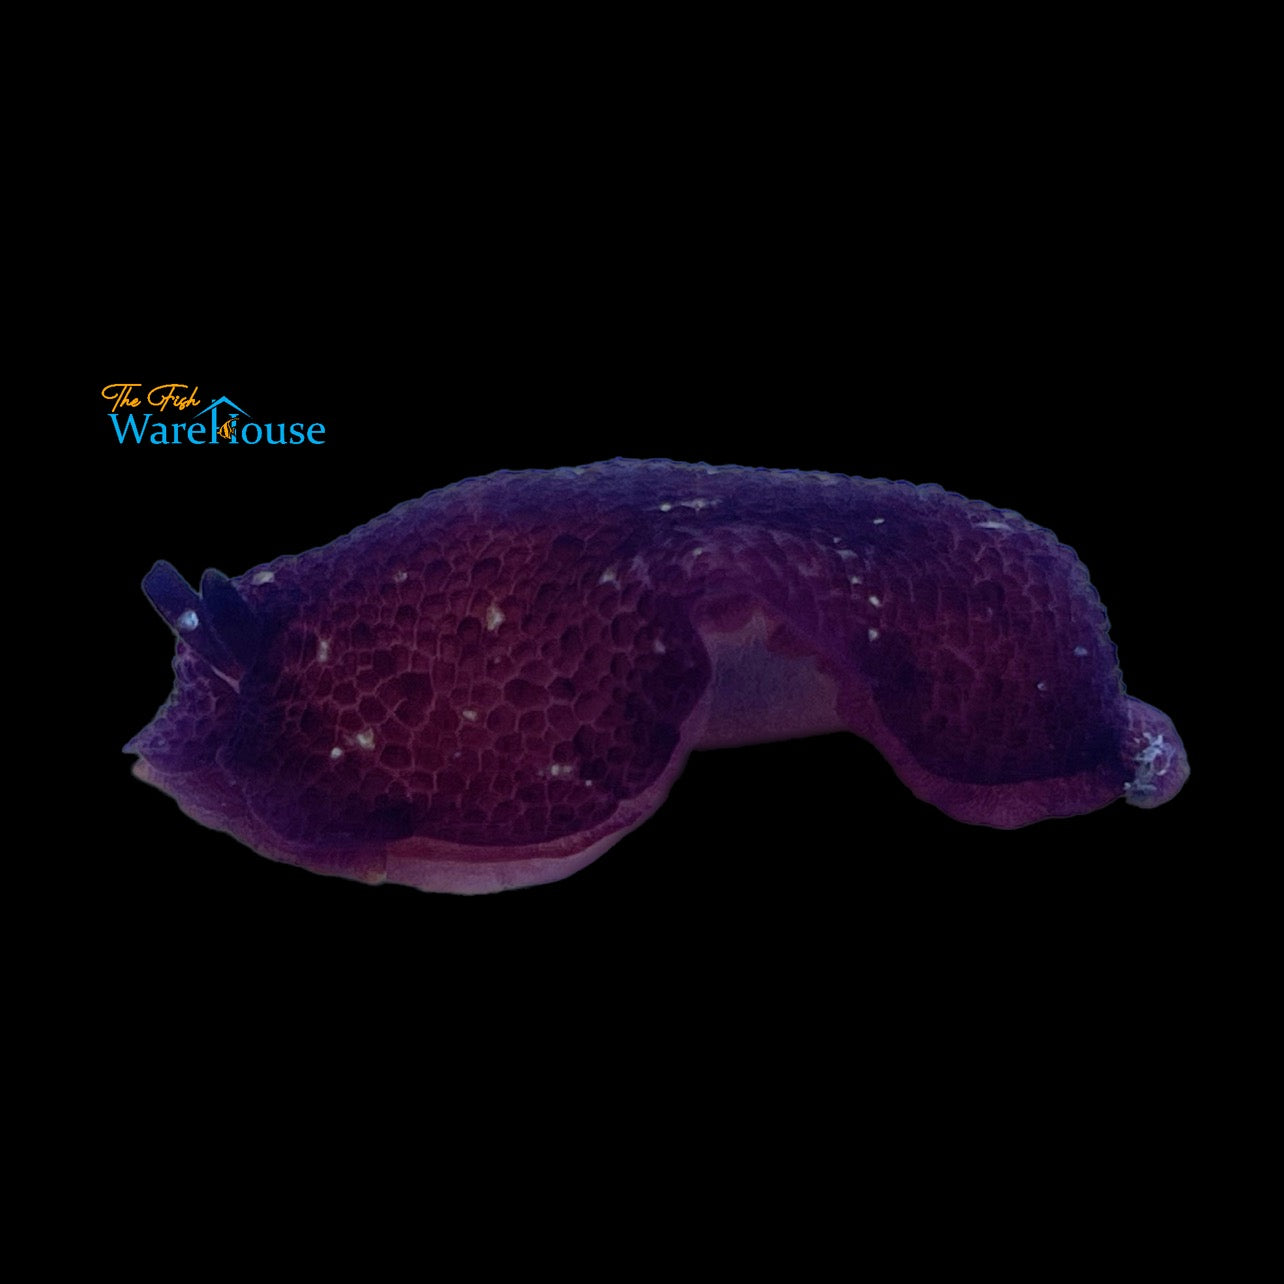 Grand Sidegill Sea Slug (Pleurobranchus grandis)